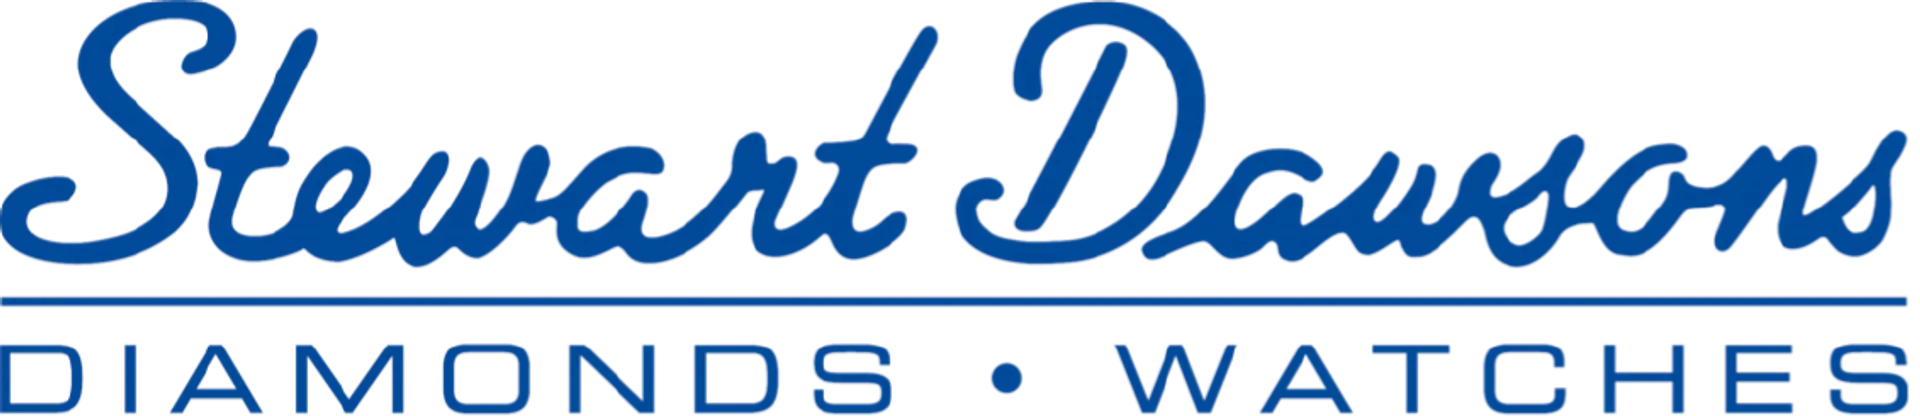 STEWART DAWSONS logo